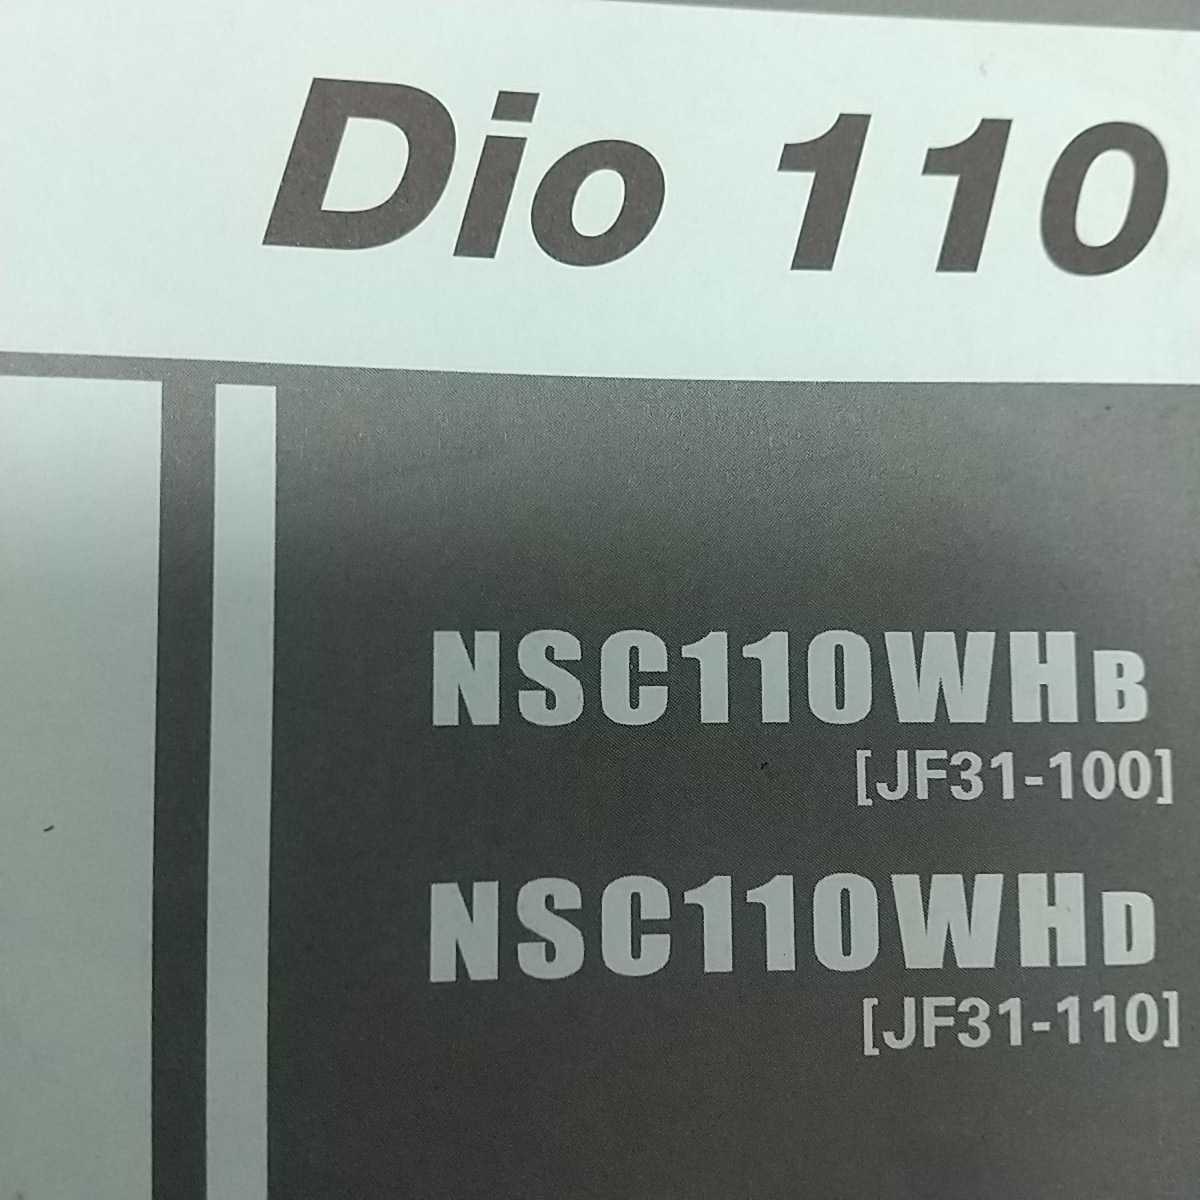 DIO110 JF31 ディオ110 フロントブレーキスイッチ フロントストップスイッチ 純正未使用品の画像3